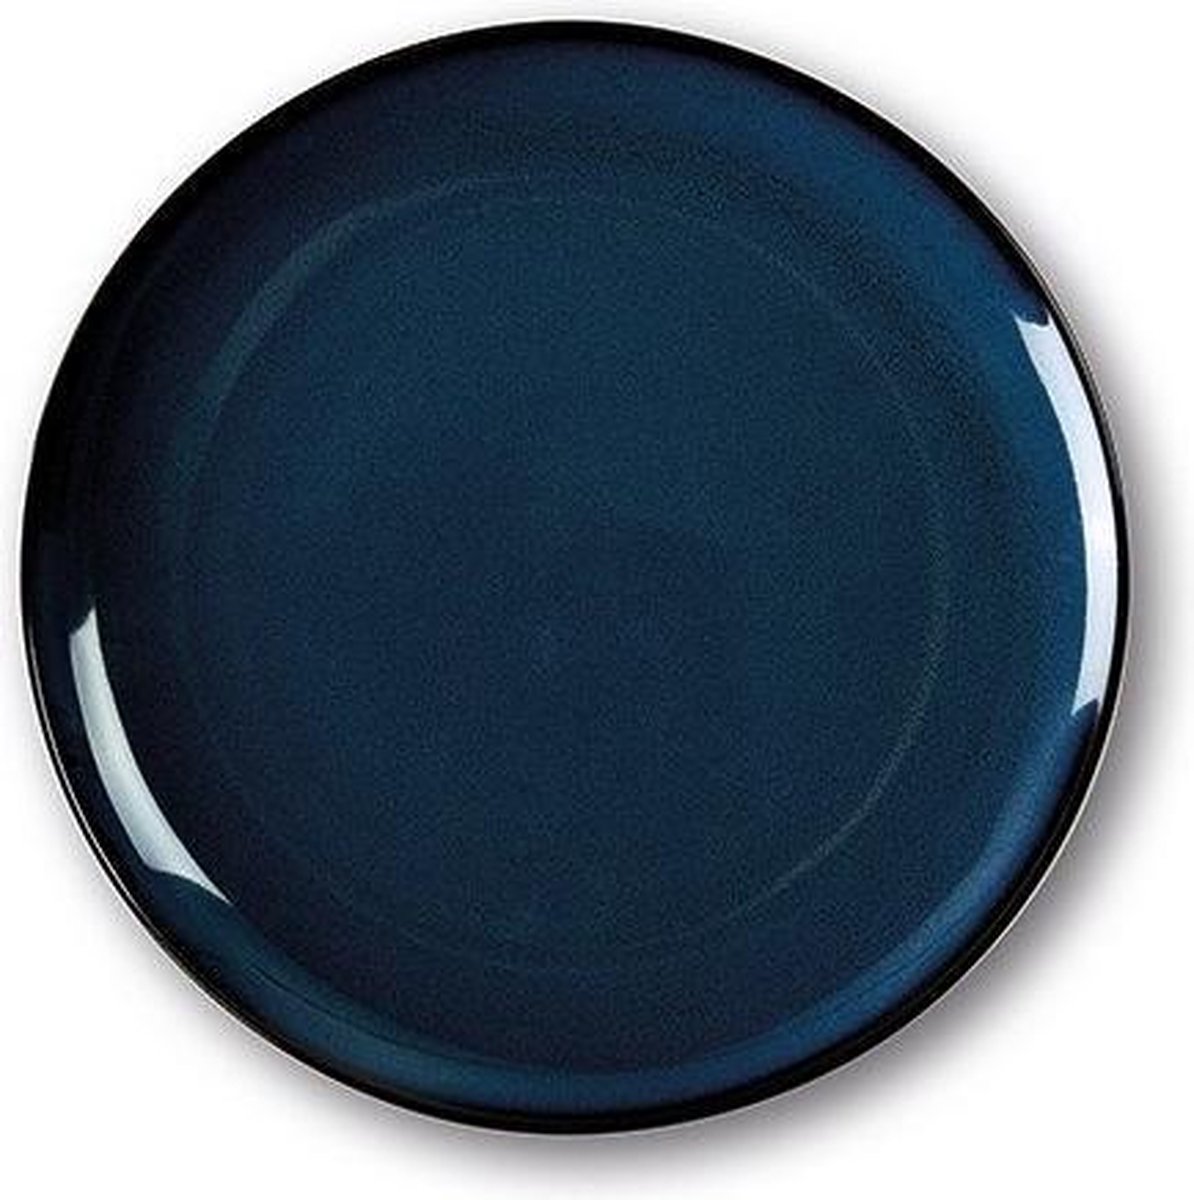 SanoDeGusto - tempcontrol bord - CADEAU tip - diner - warme gerechten - verwarmbaar - ovenbestendig - bord - 27cm - donker blauw - 2 stuks